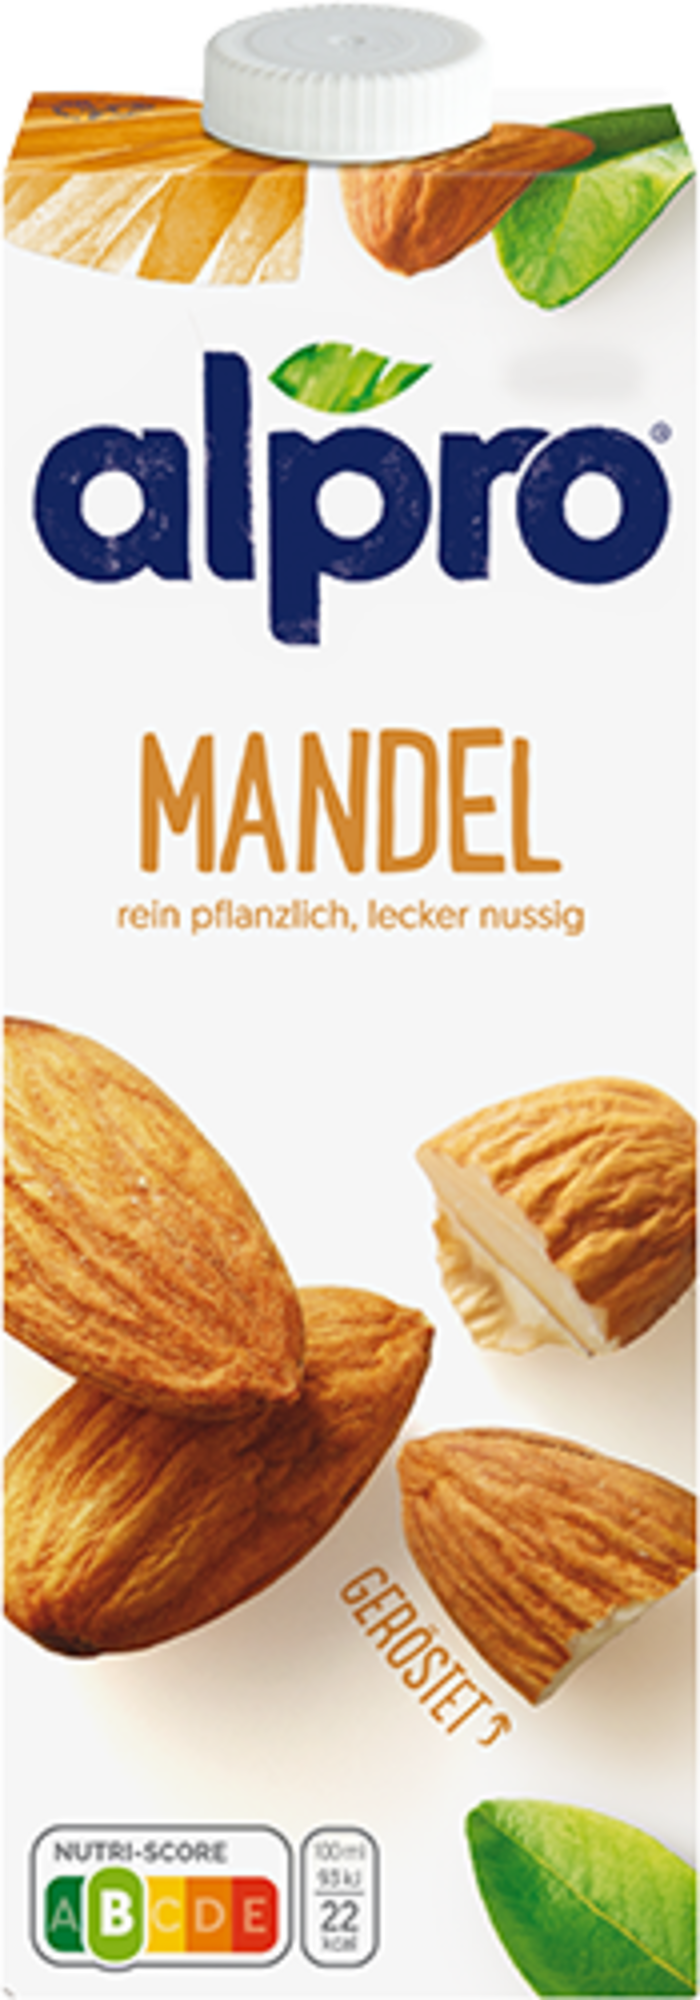 Mandeldrink Original